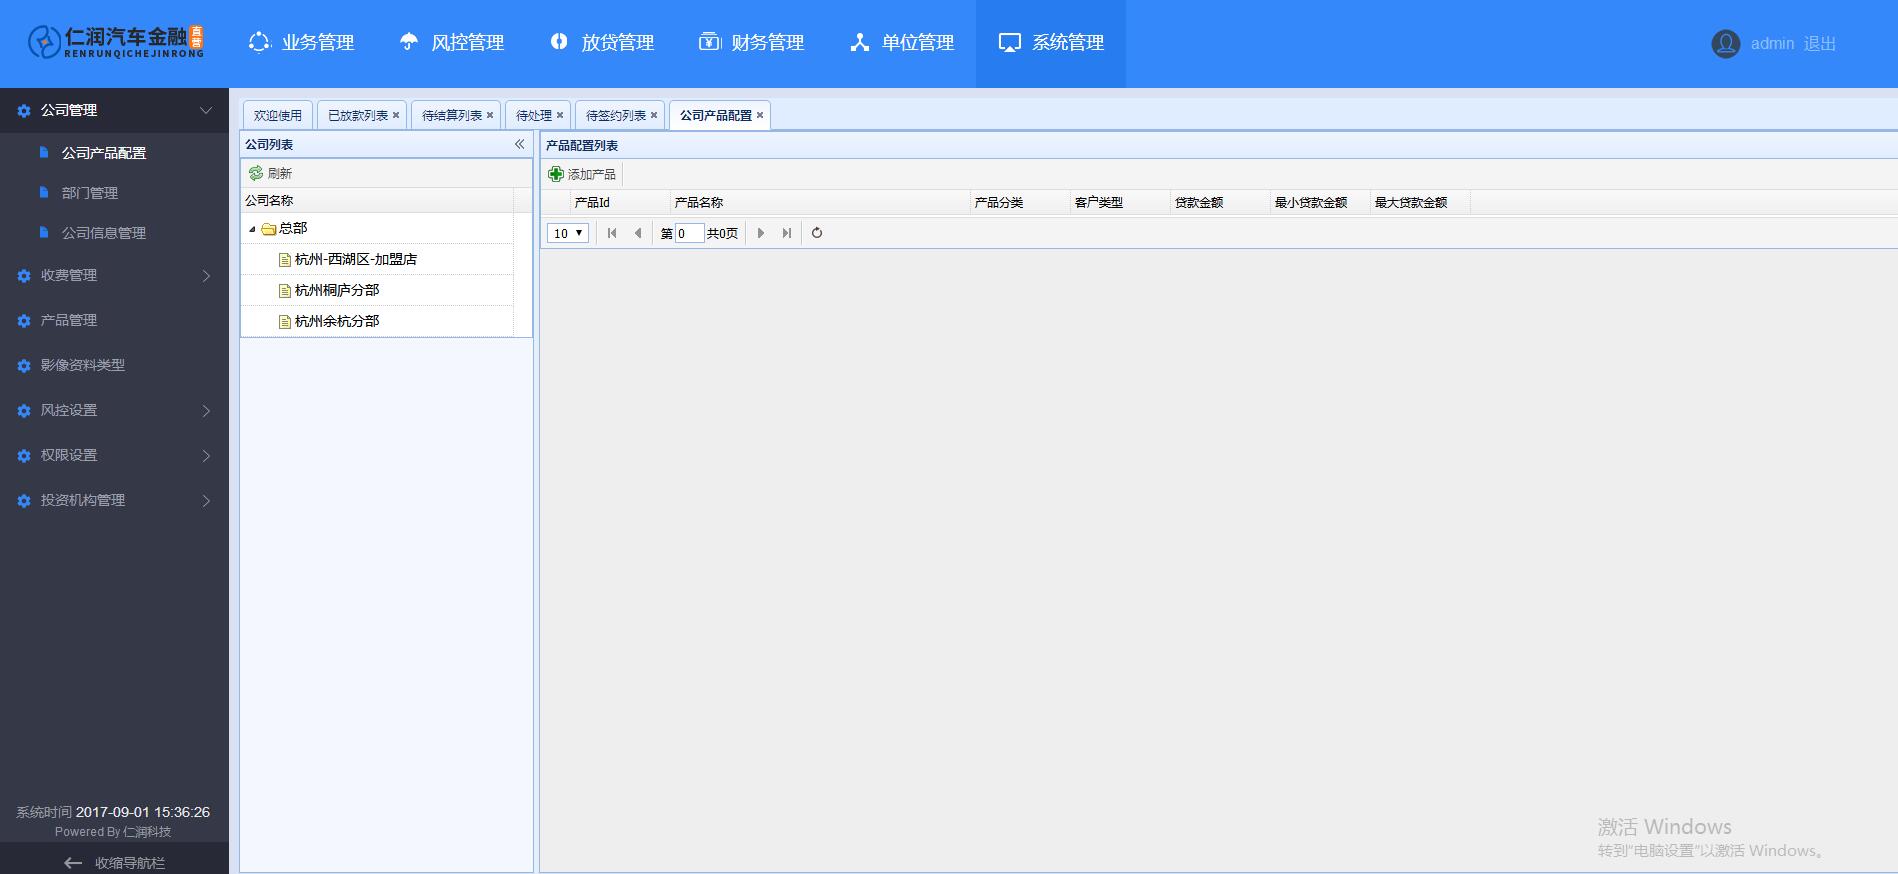 仁润汽车金融系统_2.1.0.622_32位中文免费软件(3.65 MB)